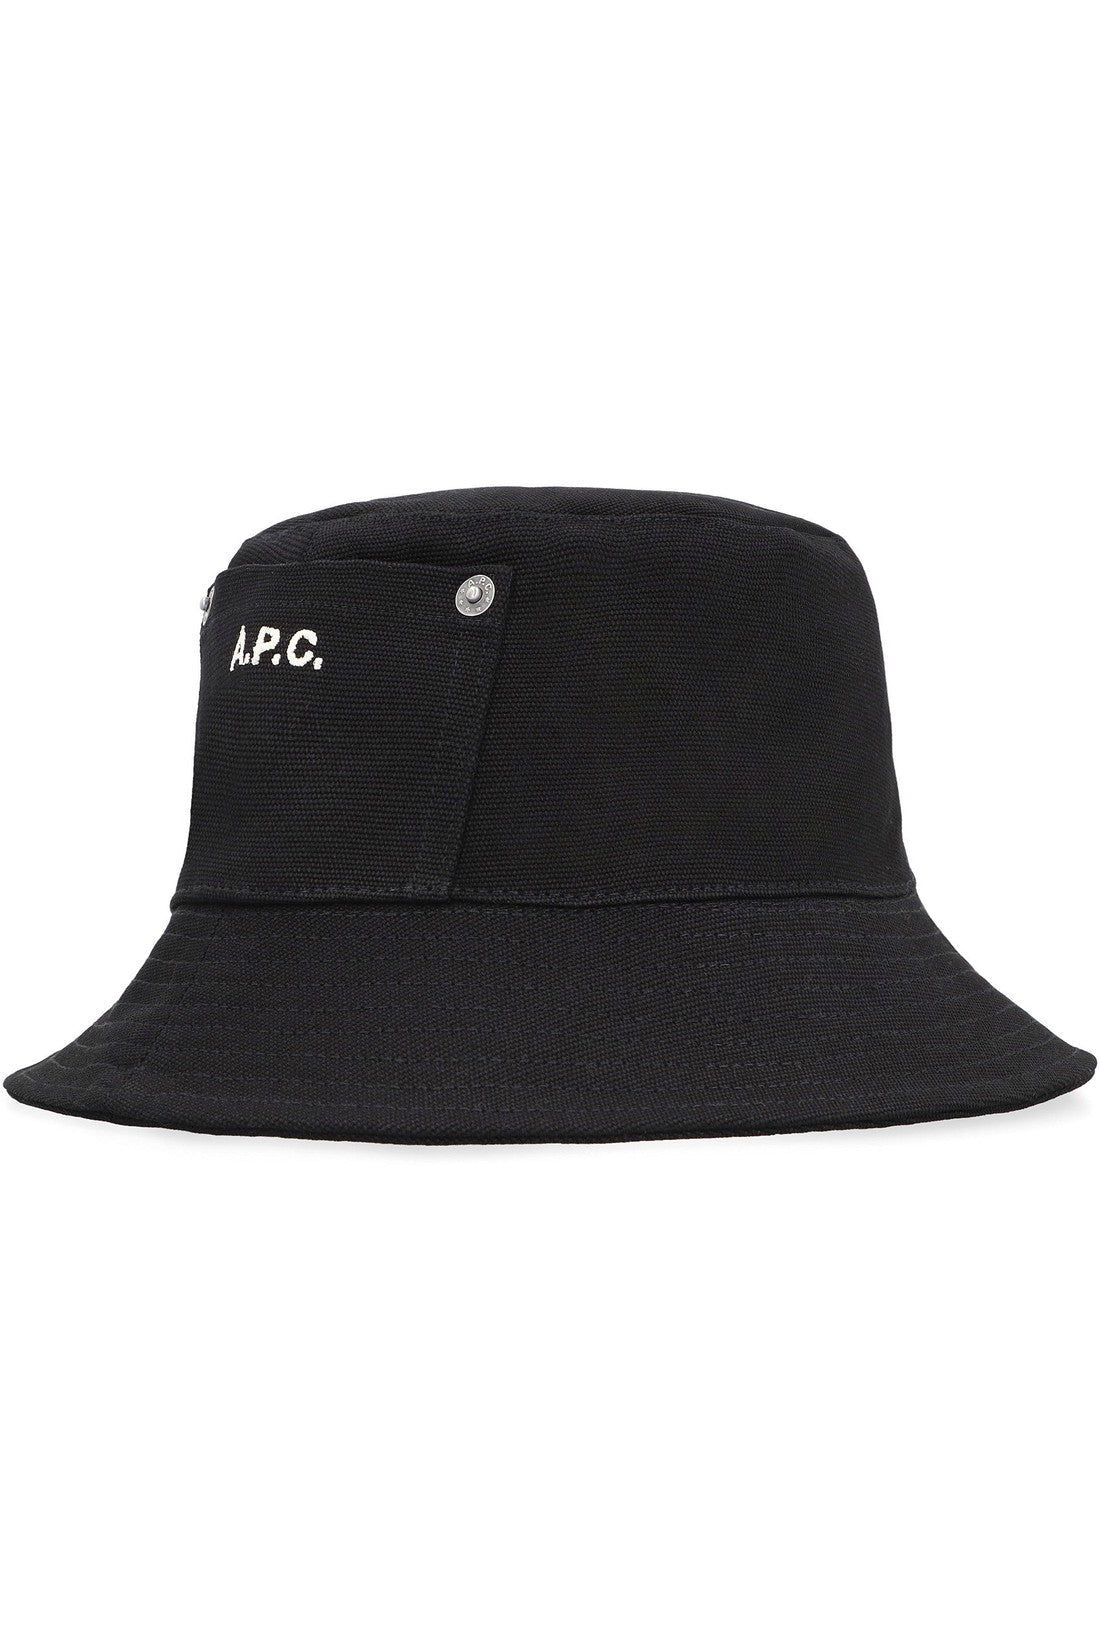 A.P.C.-OUTLET-SALE-Bucket hat-ARCHIVIST